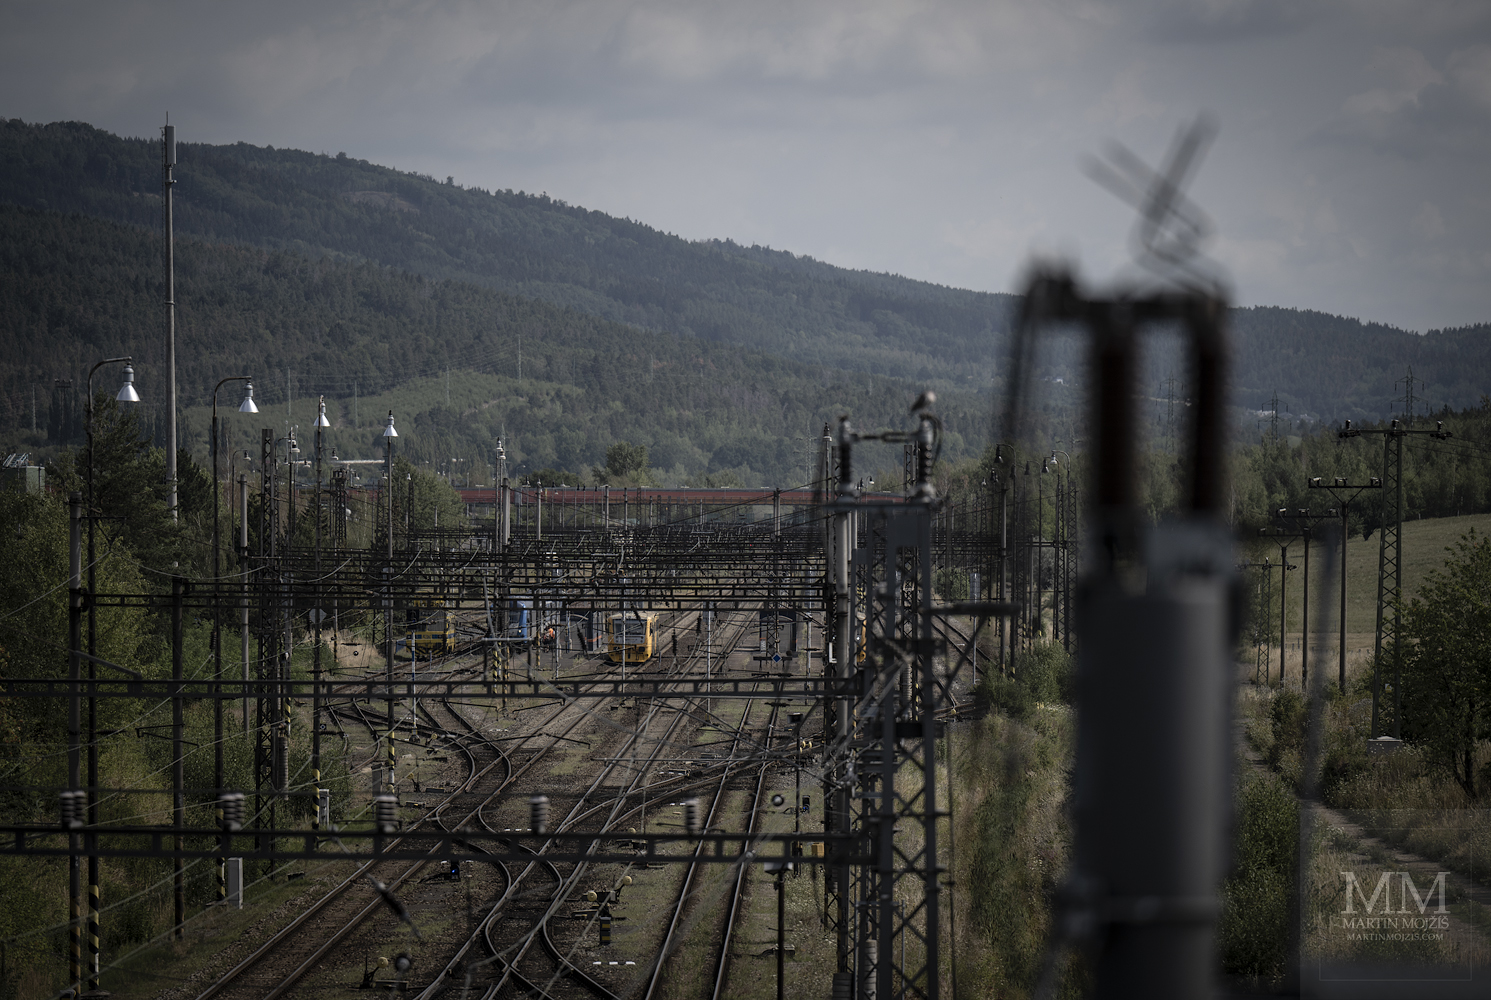 Železniční trolejové vedení nad tratěmi po horami. Umělecká fotografie s názvem ENERGIE POD HORAMI. Fotograf Martin Mojžíš.